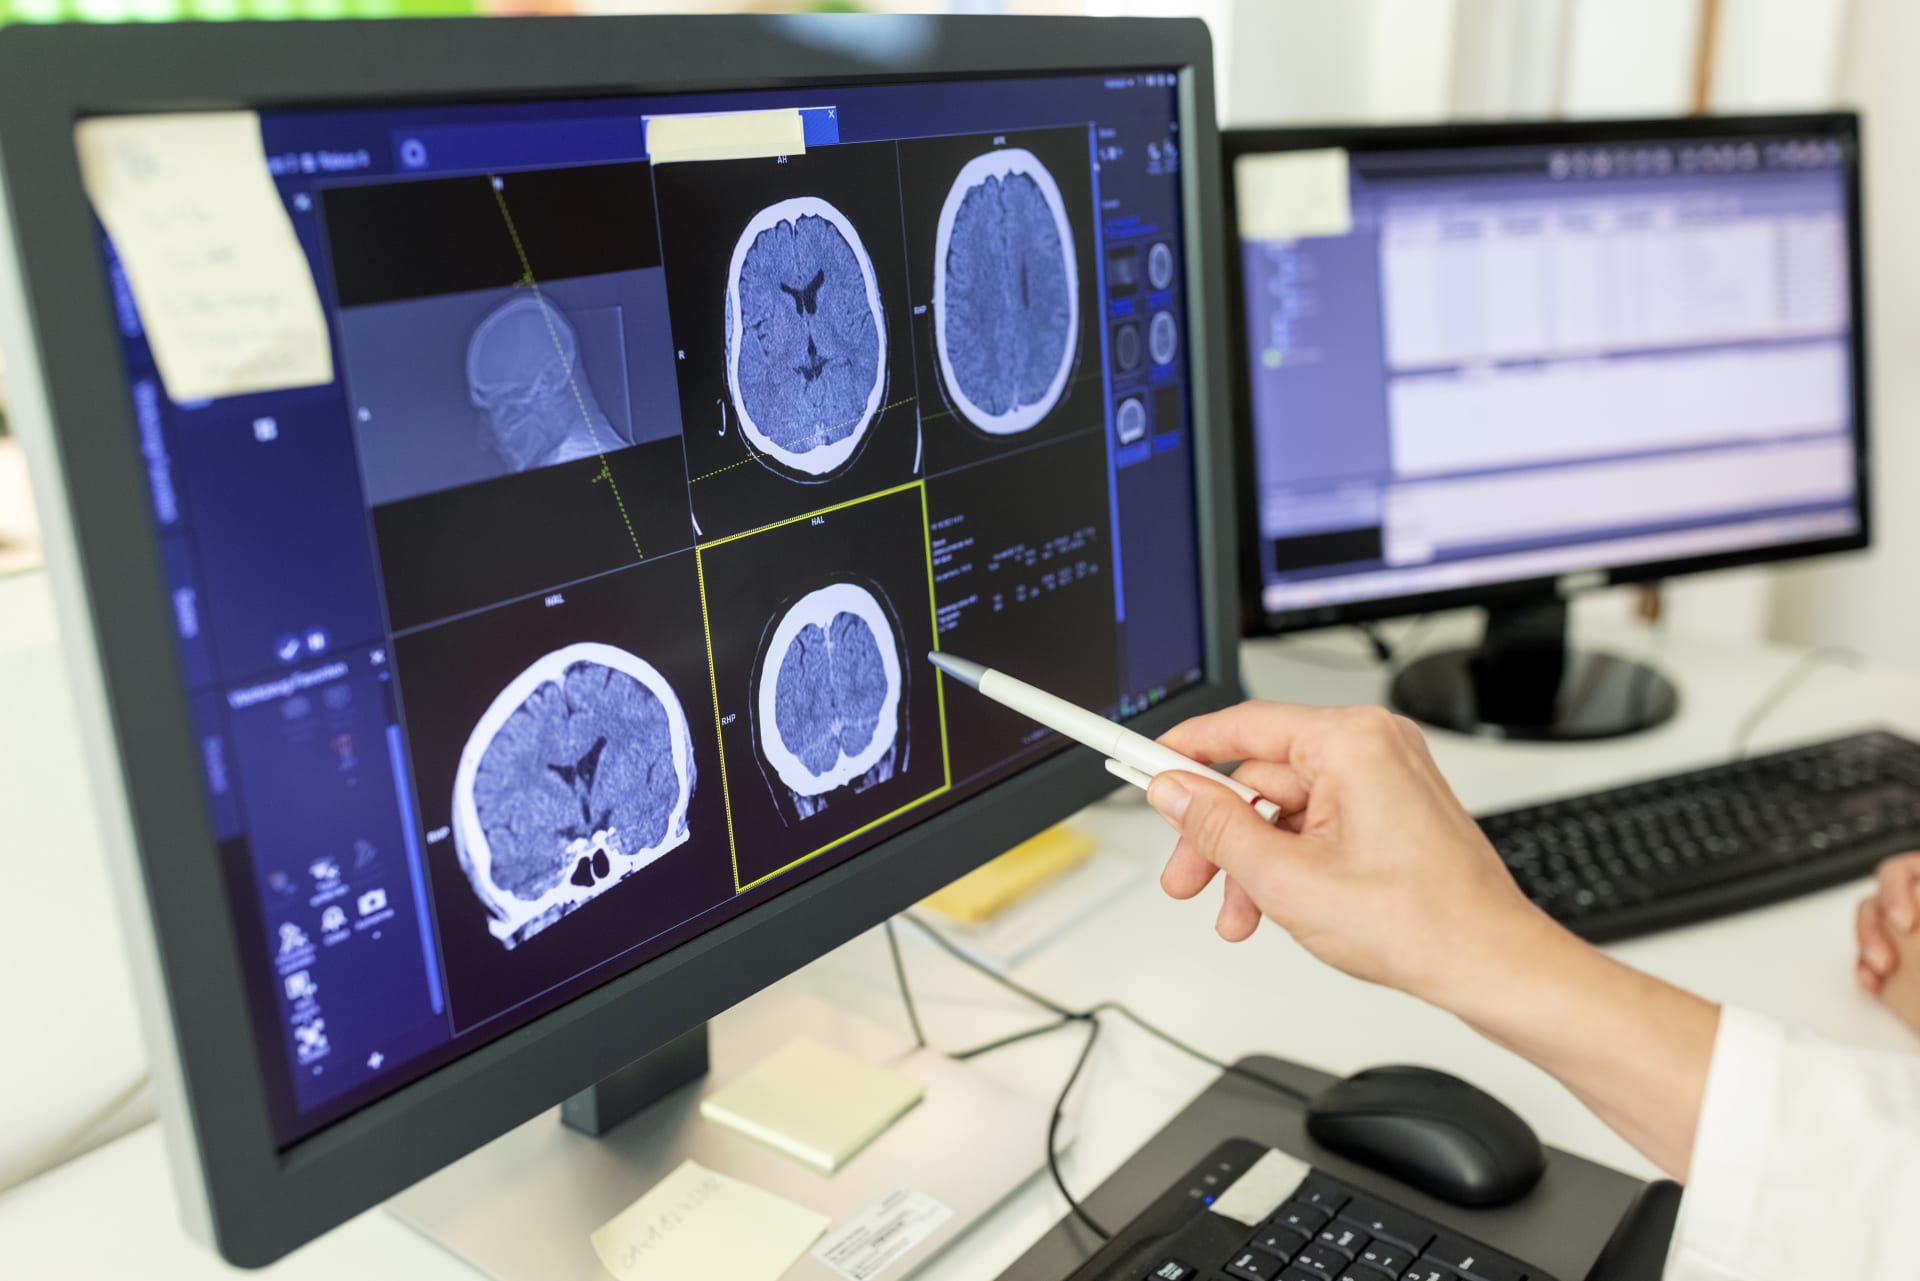 Počítačová tomografie umožňuje zobrazit různé části mozku pomocí rentgenového záření a následné počítačové rekonstrukce (ilustrační foto).